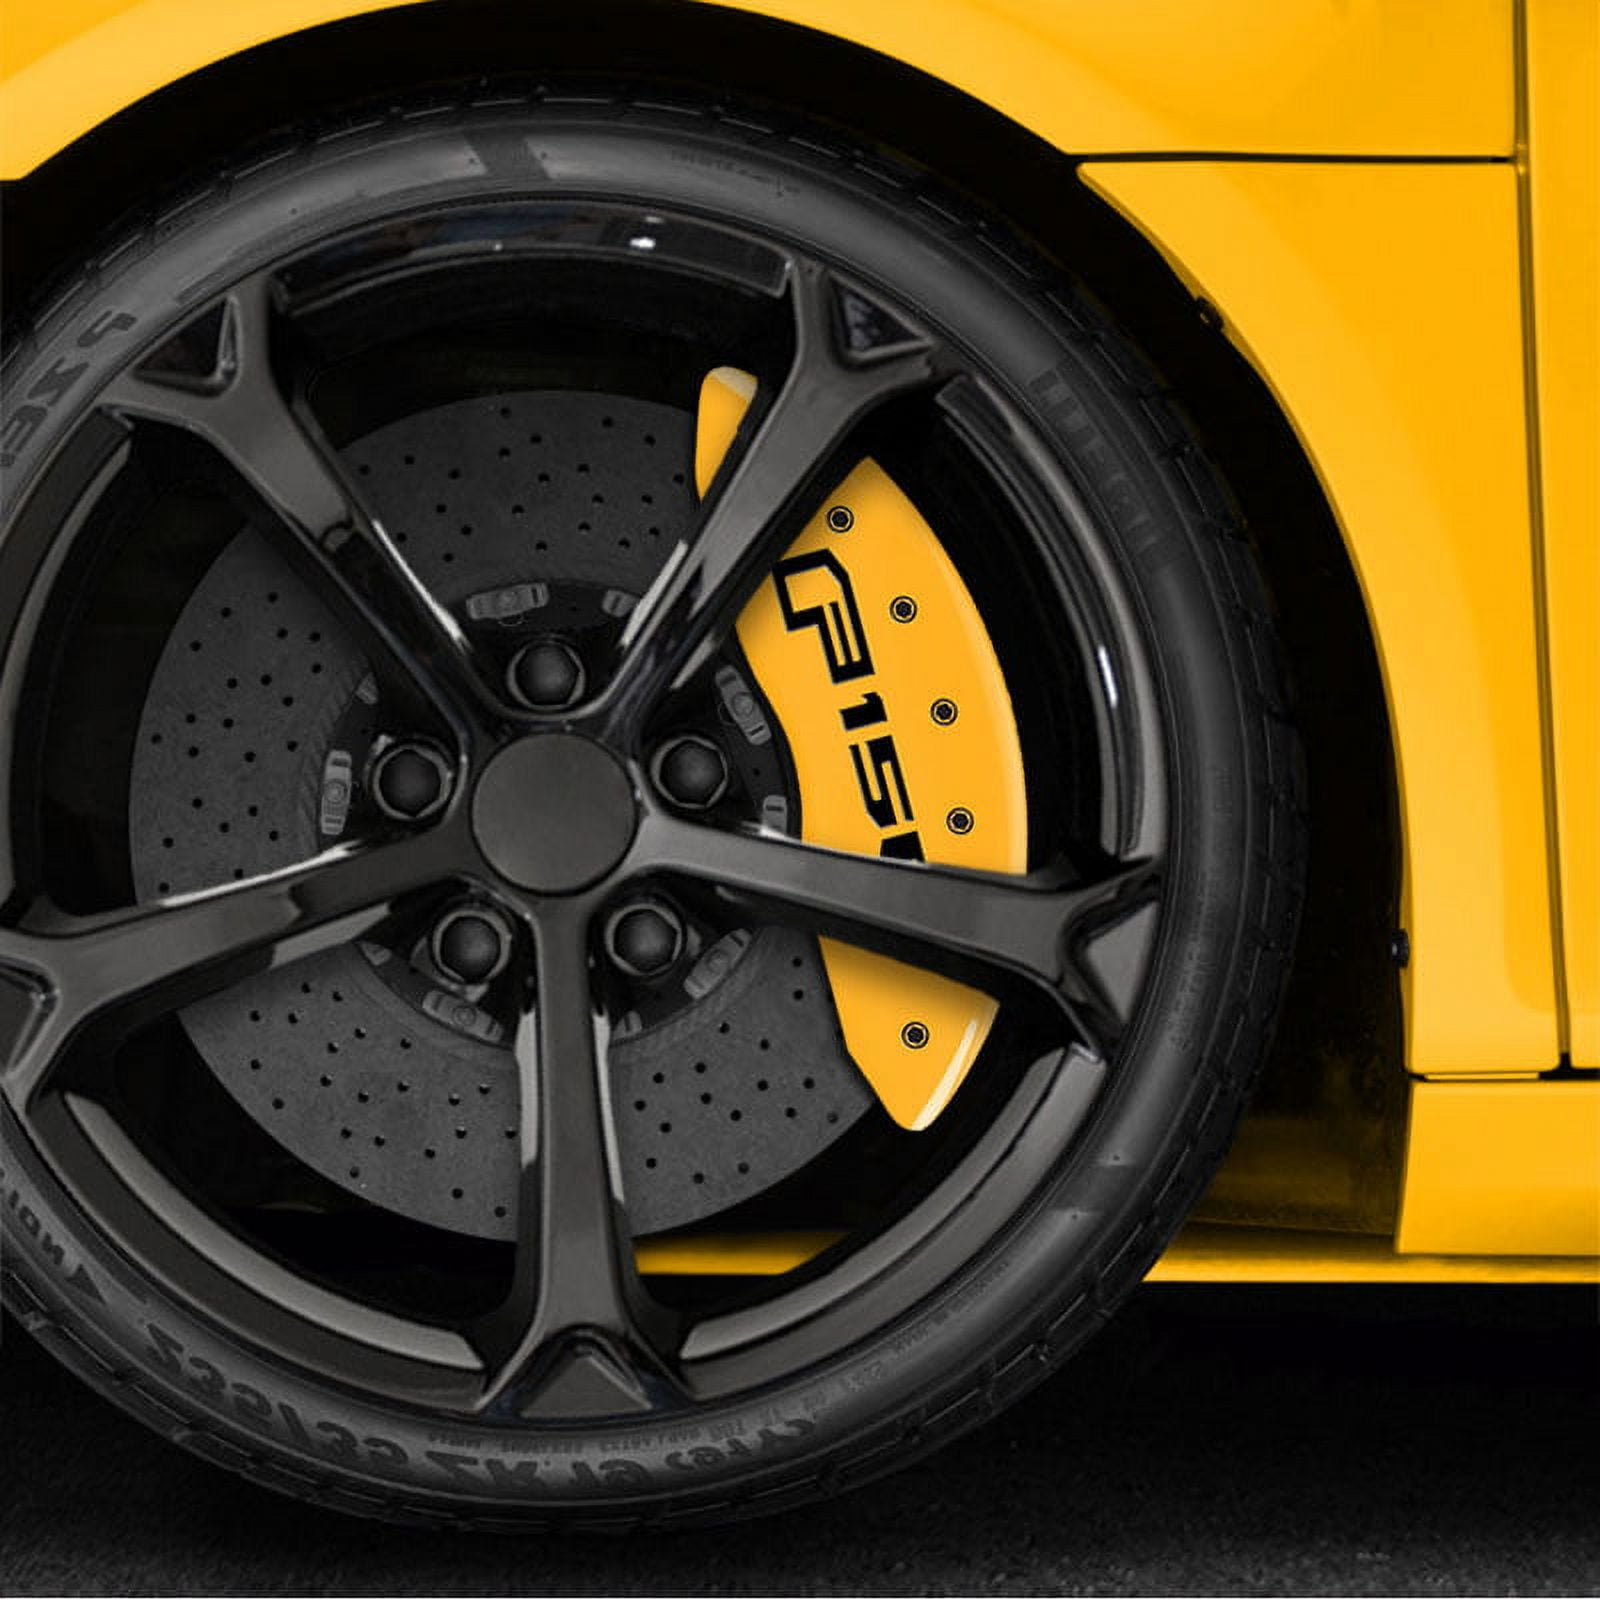 4Pc Brake Caliper Covers for Mitsubishi Yellow / Car Accessories